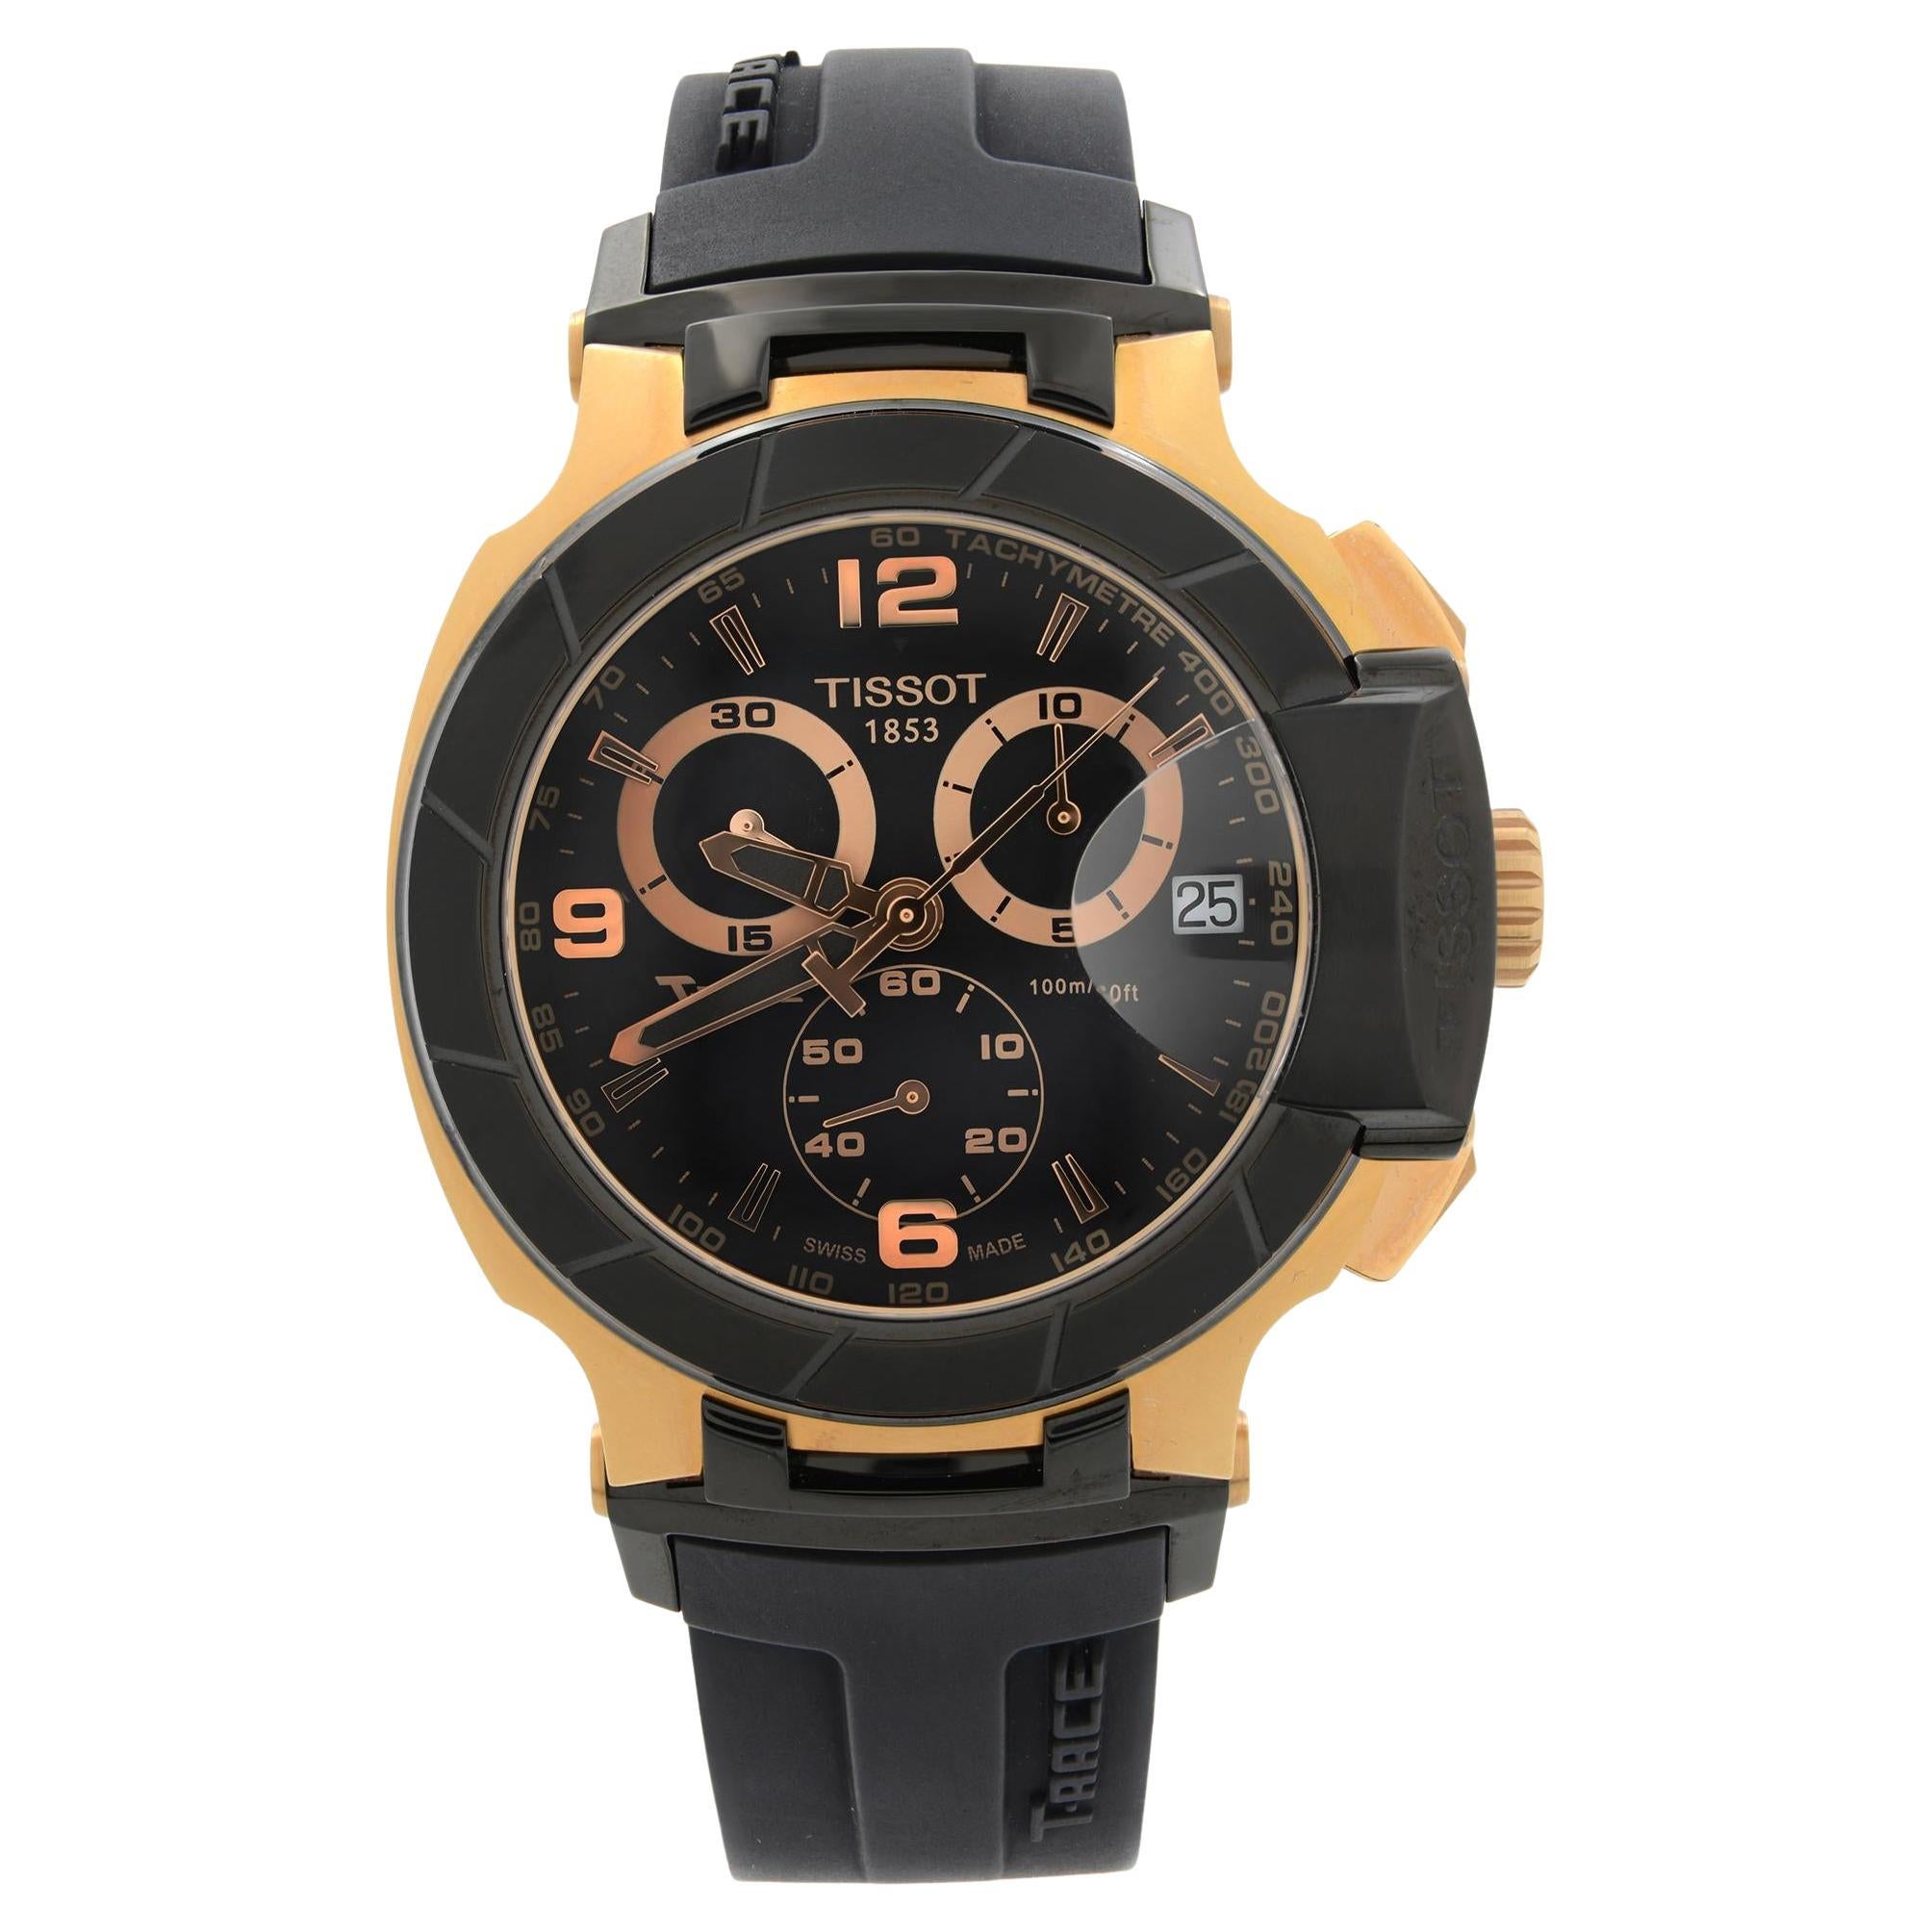 Tissot T-Race Rose Gold-Tone Steel Black Dial Quartz Watch T048.417.27.057.06 For Sale